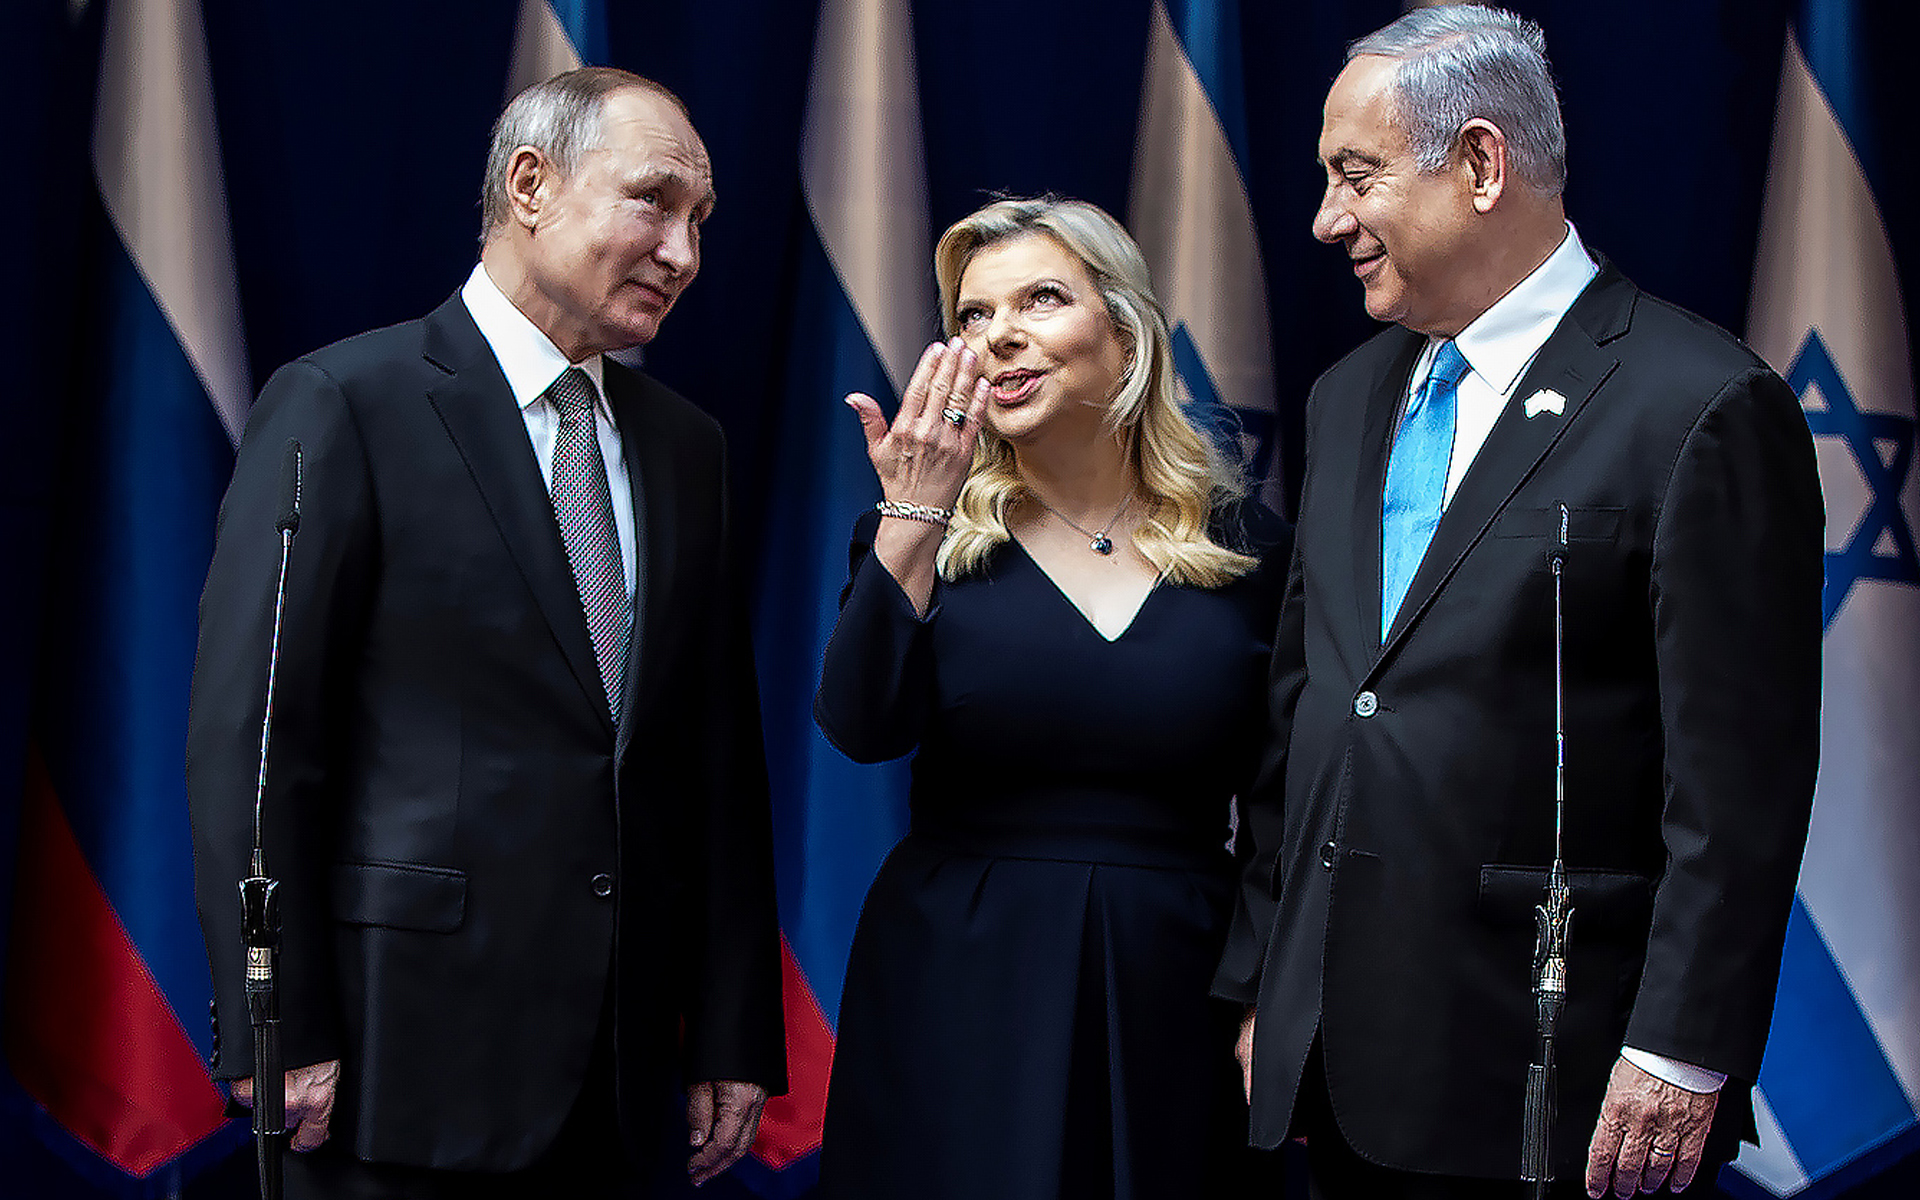 Российский вектор внешней политики Израиля